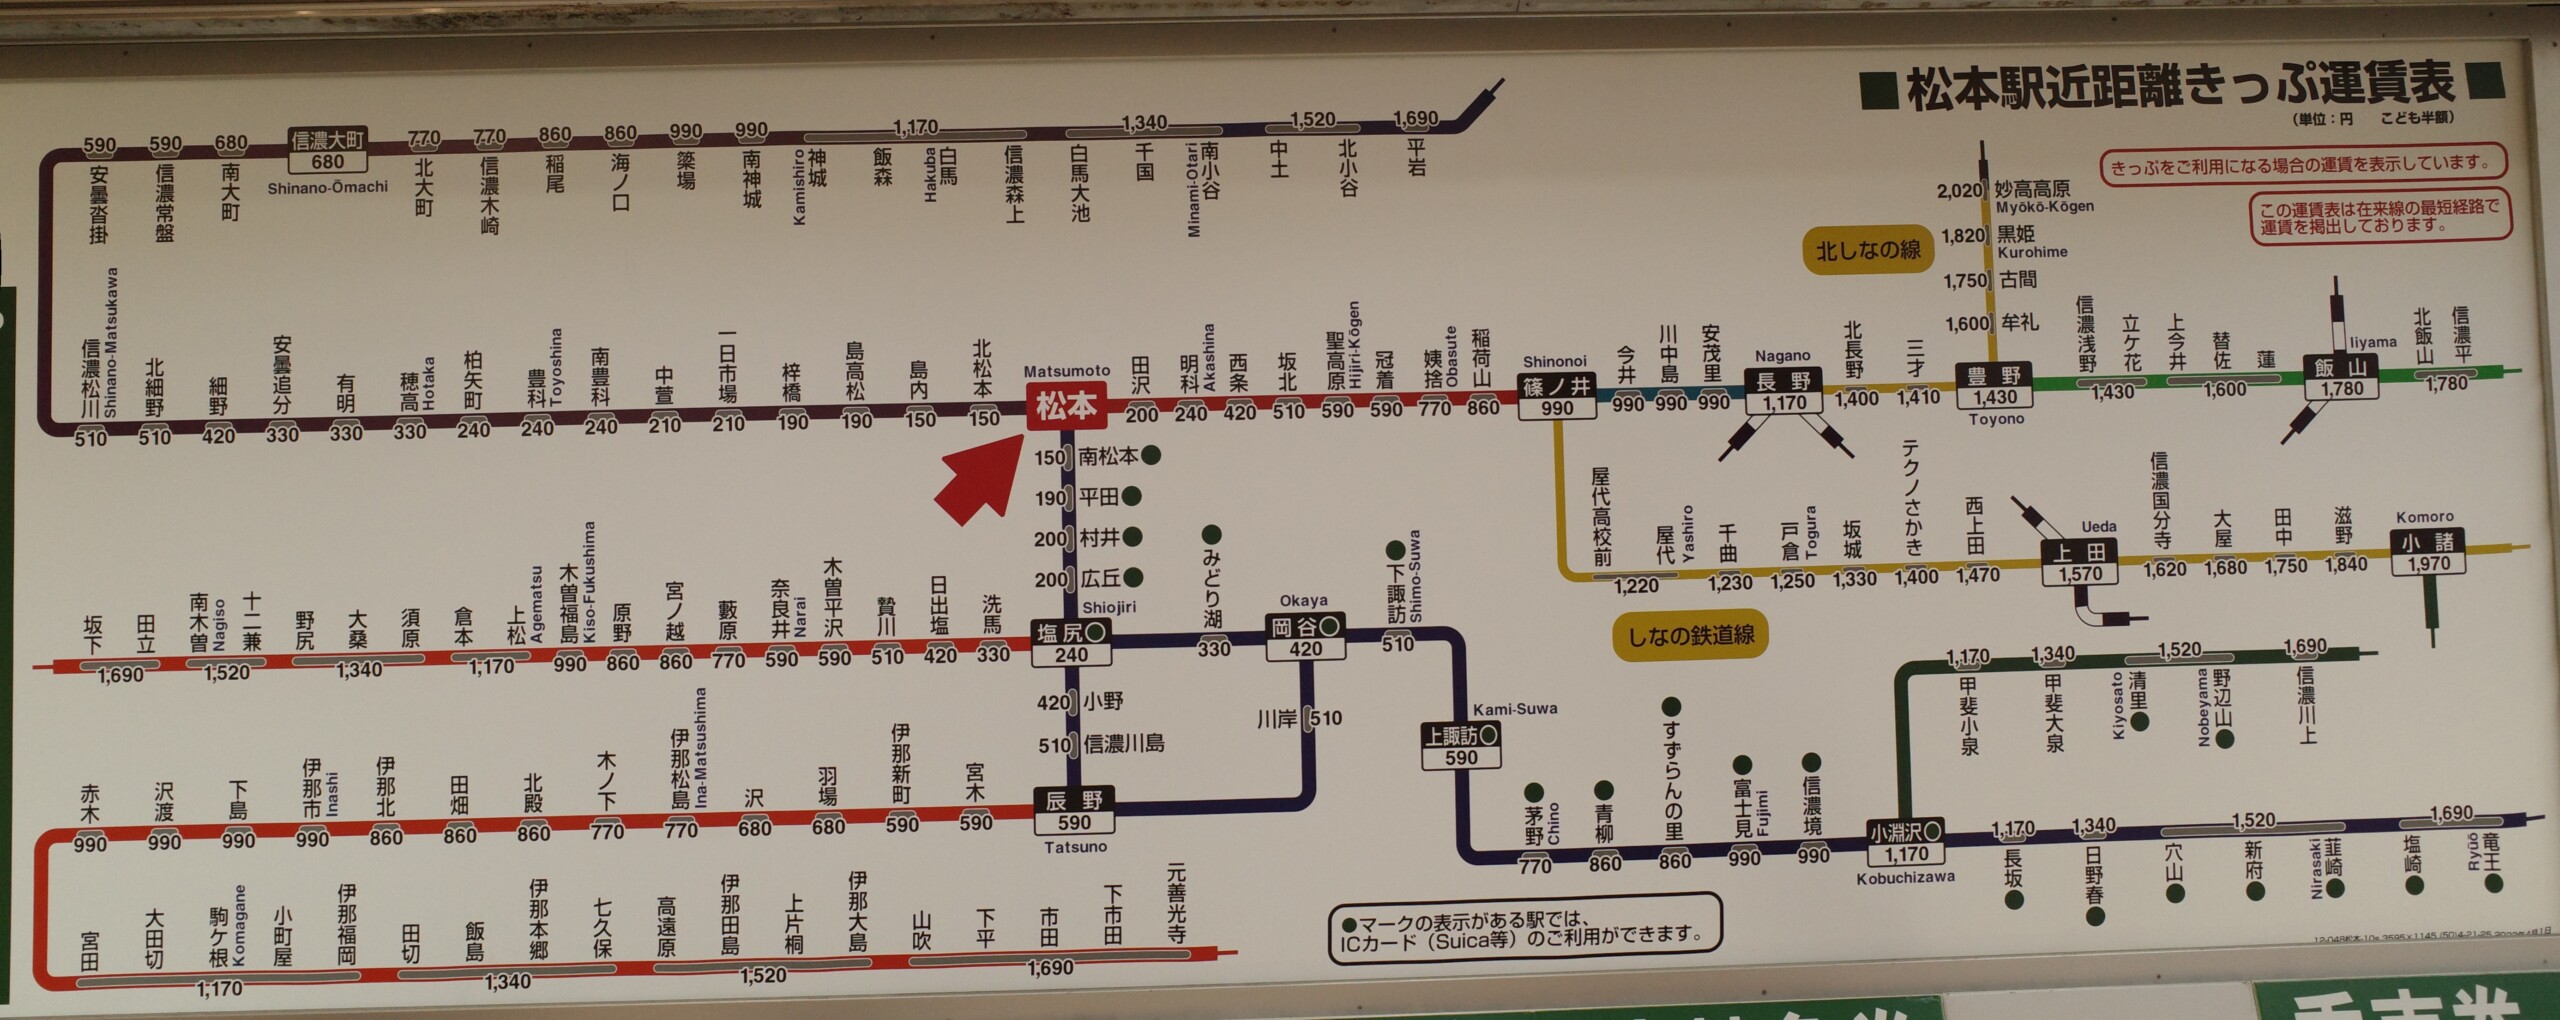 松本駅の路線図